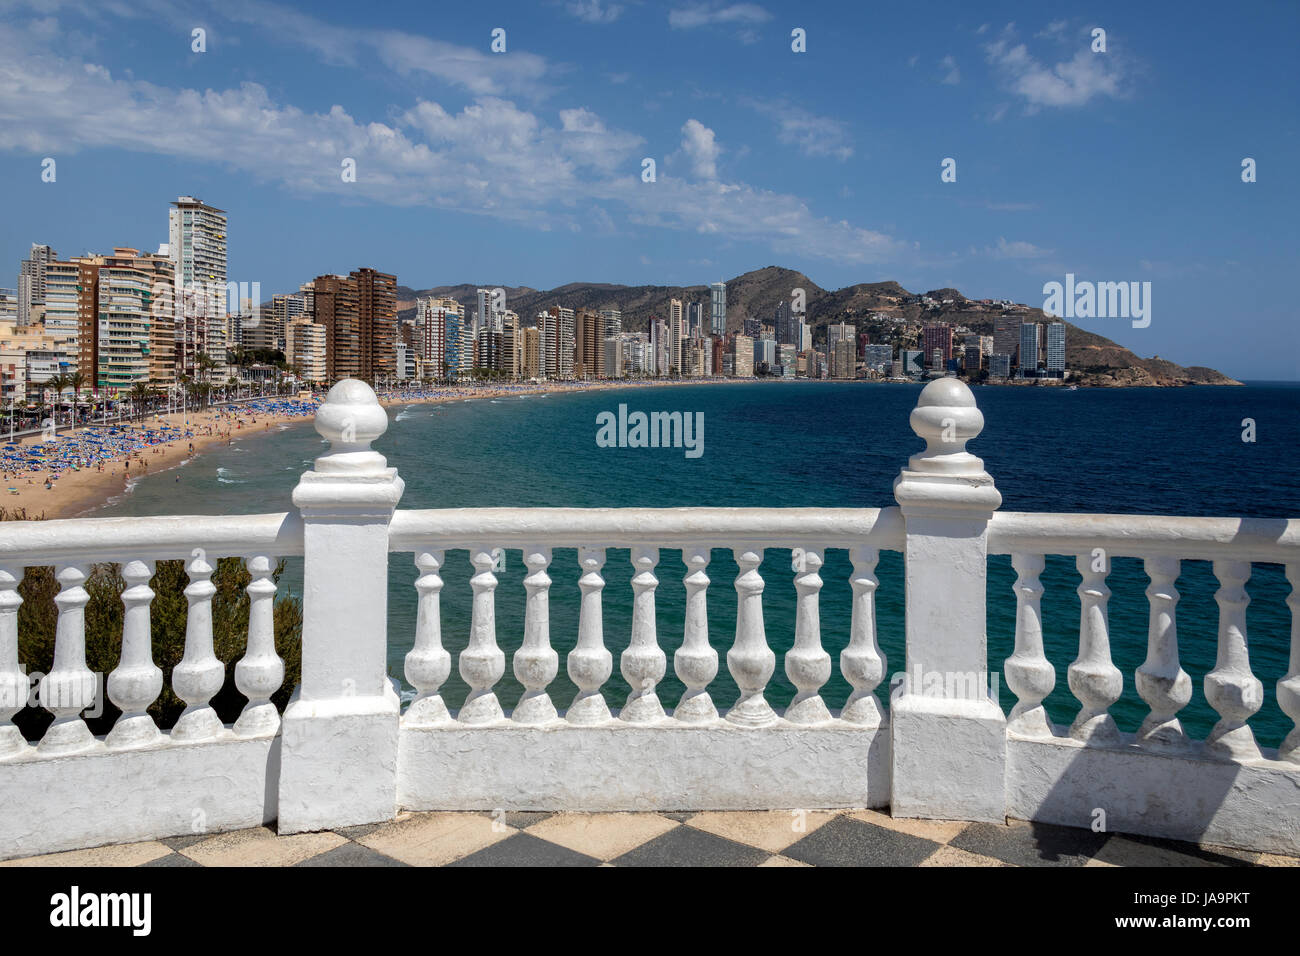 Benidorm - España. Una ciudad en la provincia de Alicante en la Costa Blanca en el este de España, en la costa mediterránea. Foto de stock